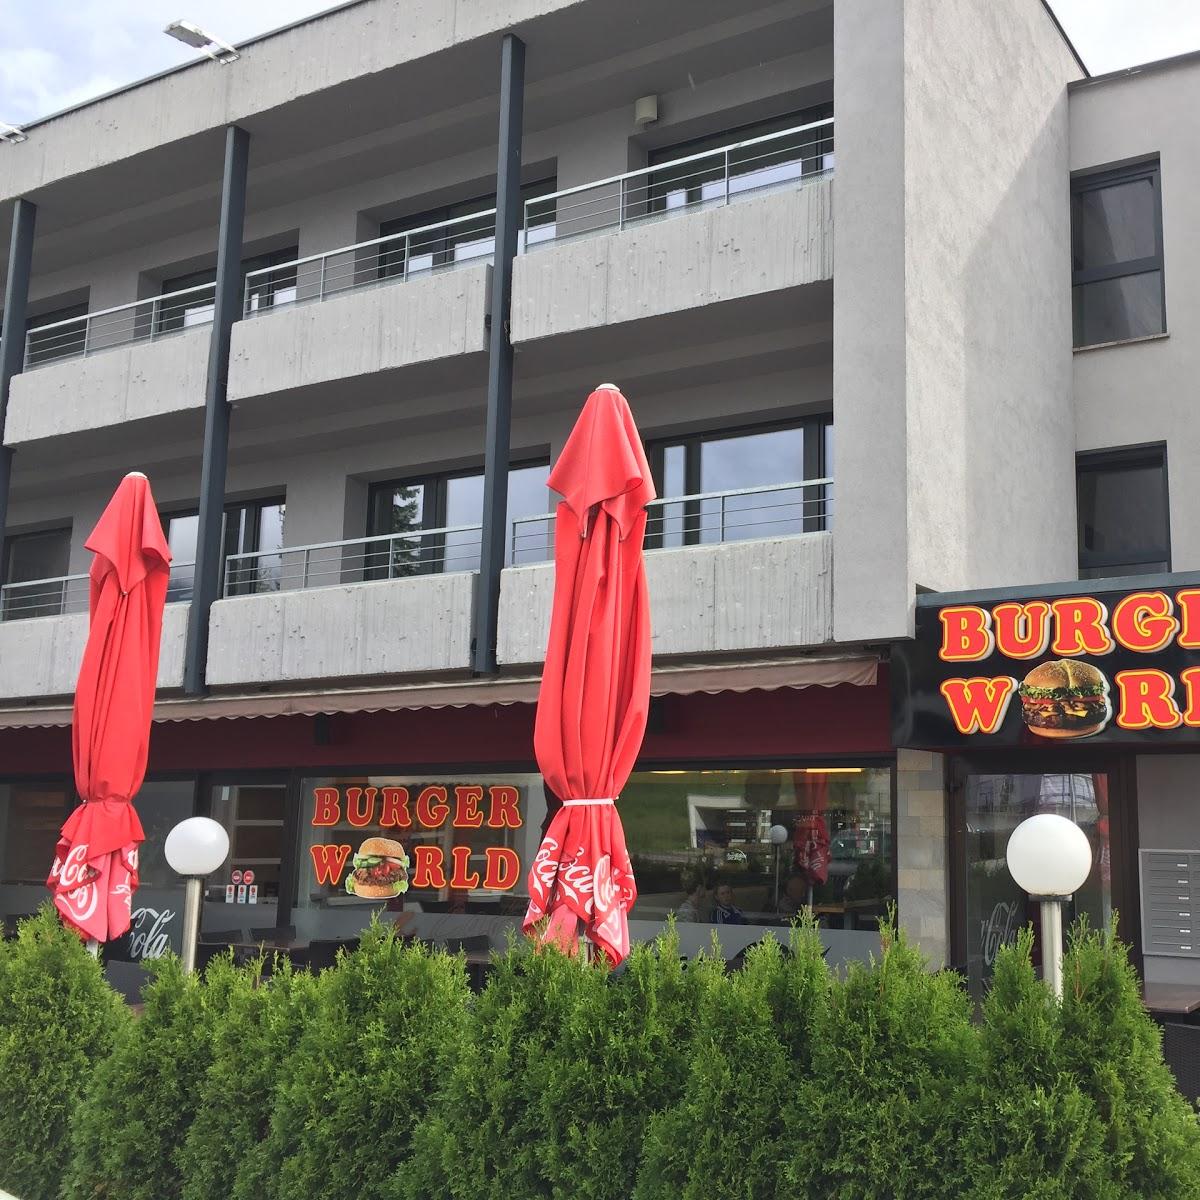 Restaurant "Burger World" in Gemeinde Imst